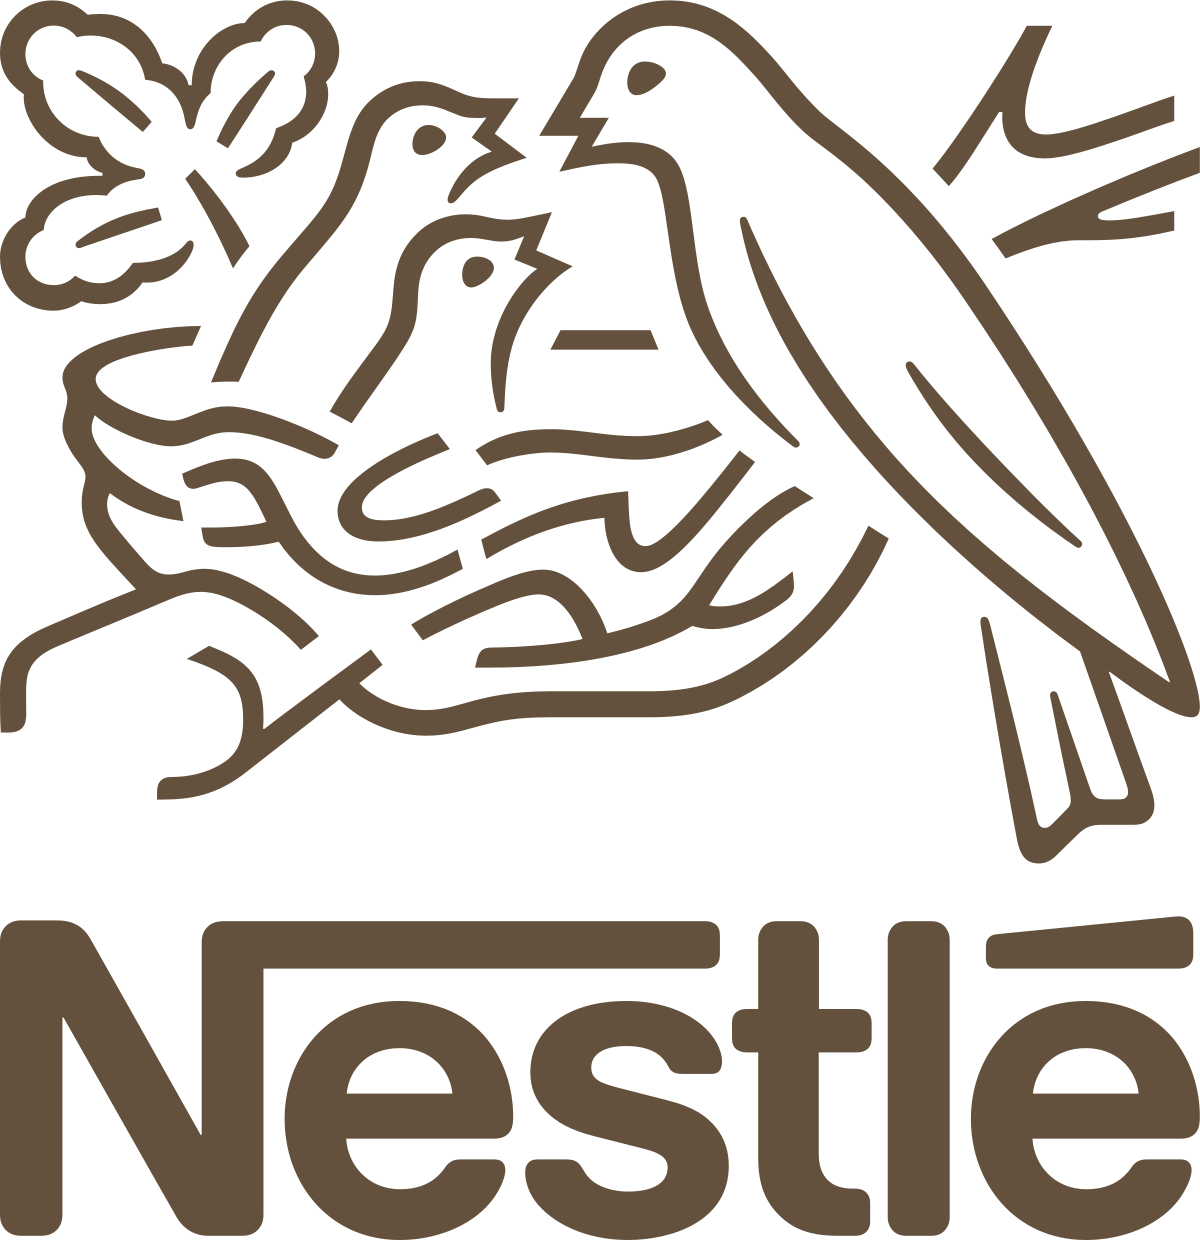 Nestlé Canada